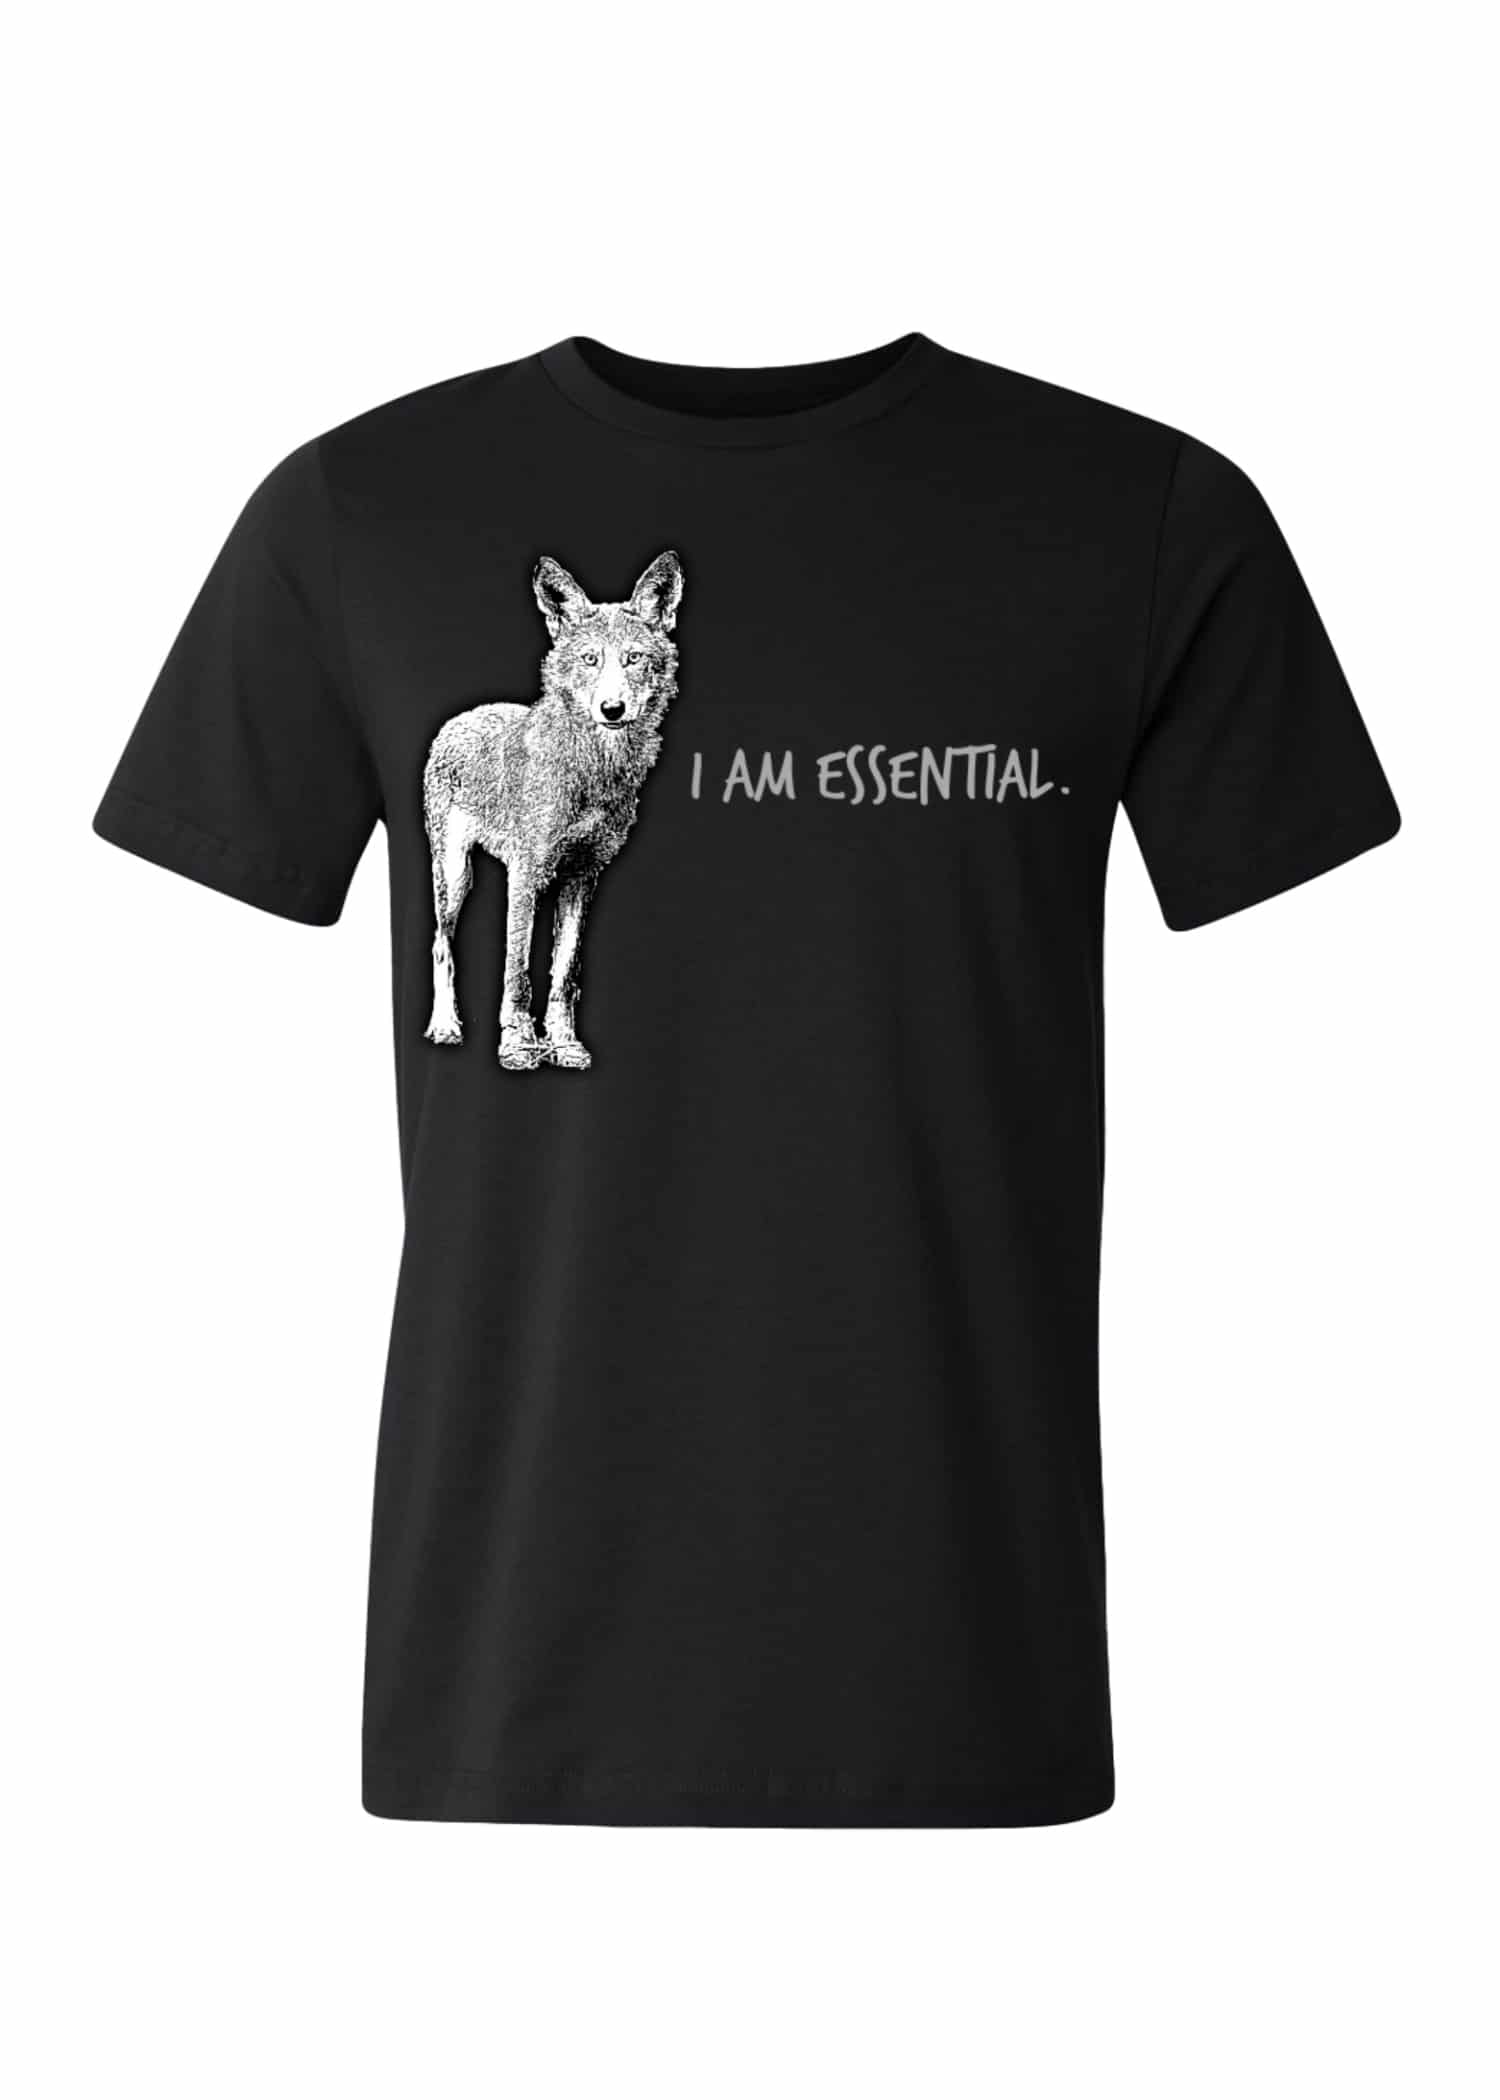 redwolf t shirt